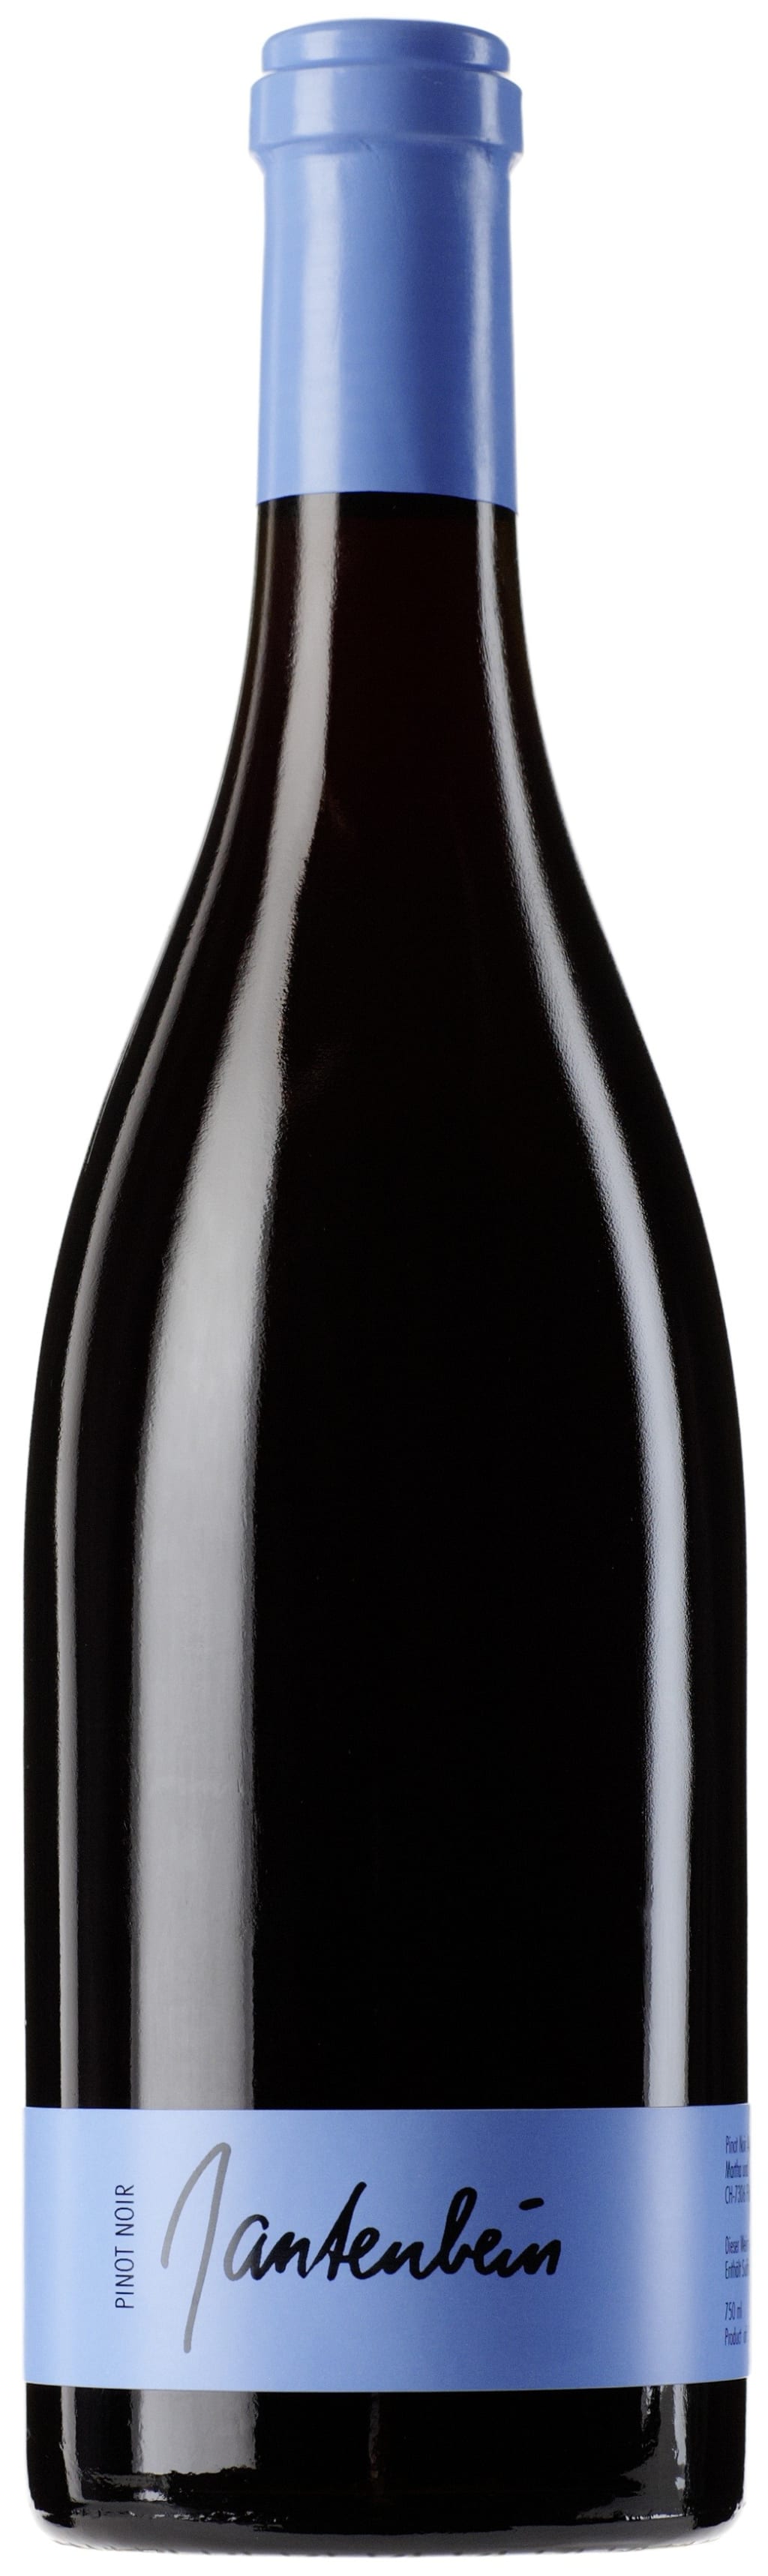 Gantenbein Pinot Noir 2016